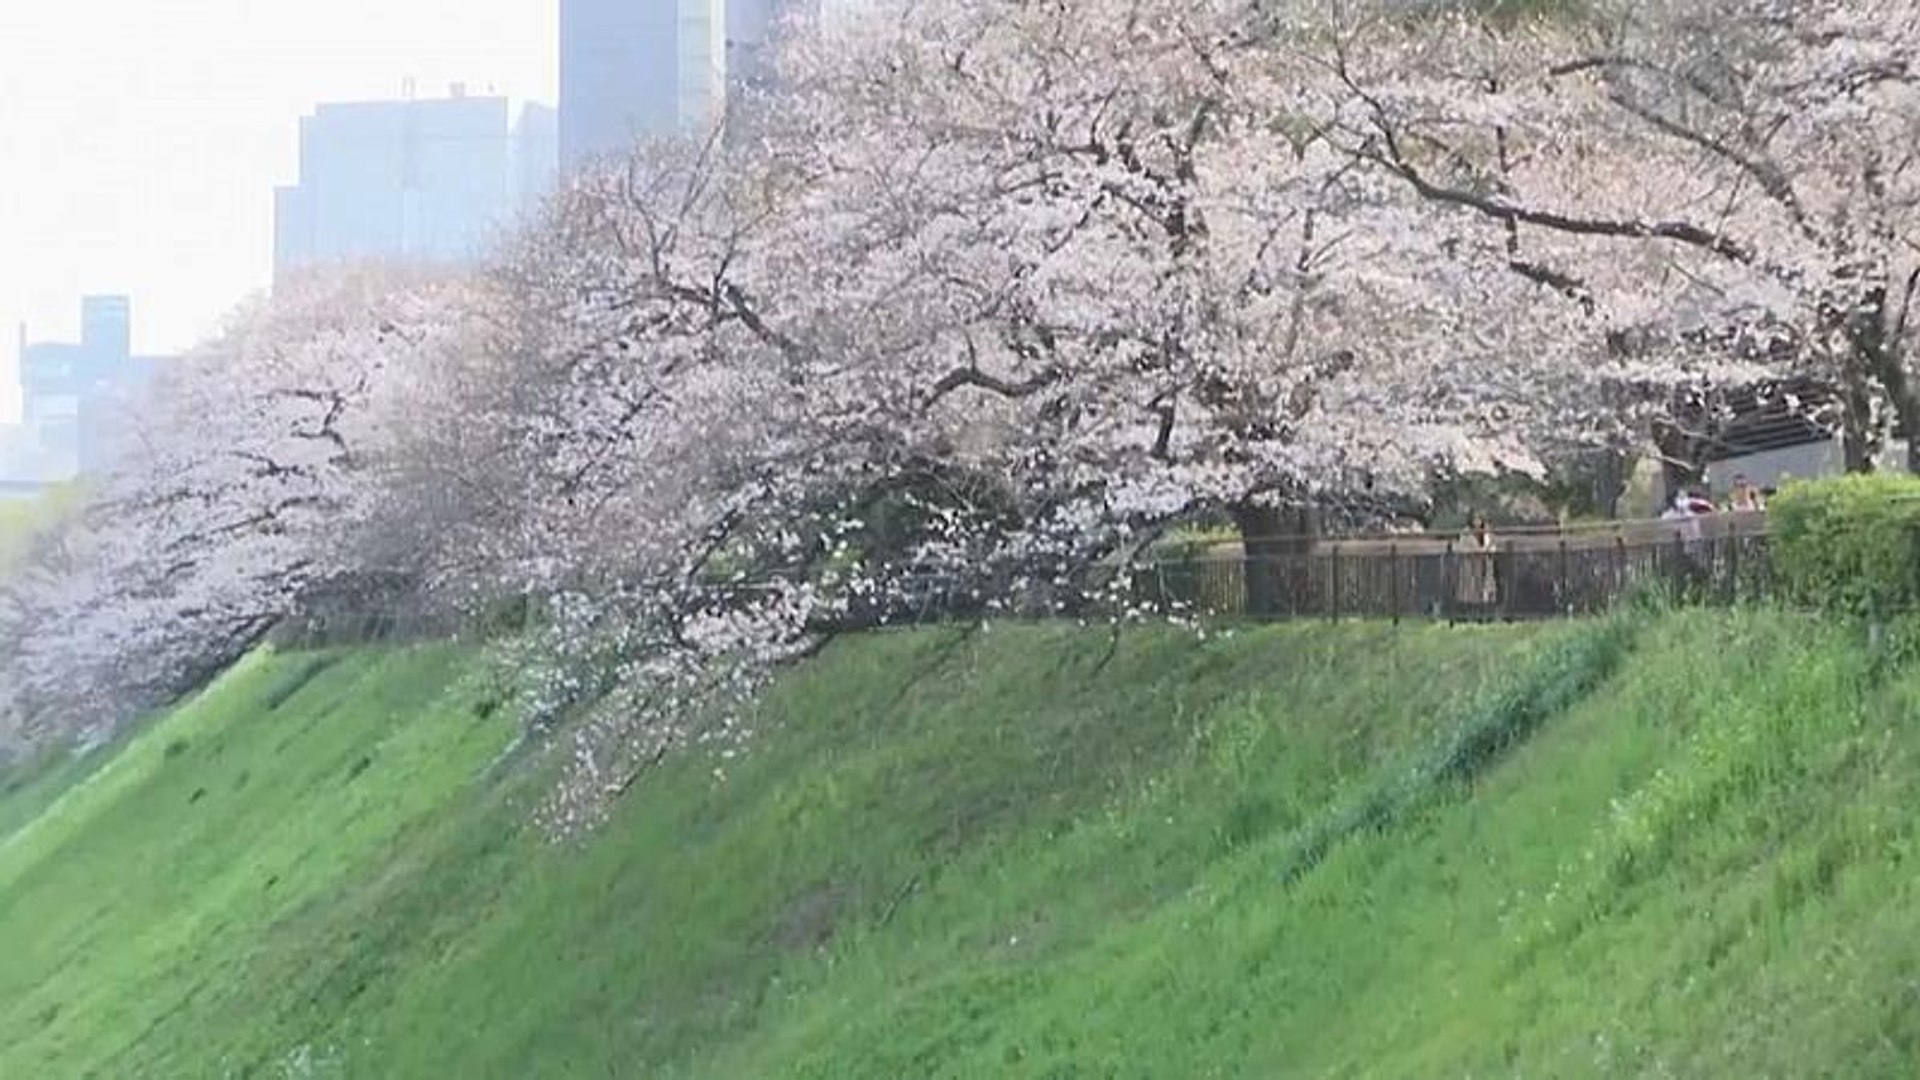 شاهد تفتح أزهار الكرز في اليابان إيذانا بدخول فصل الربيع فيديو